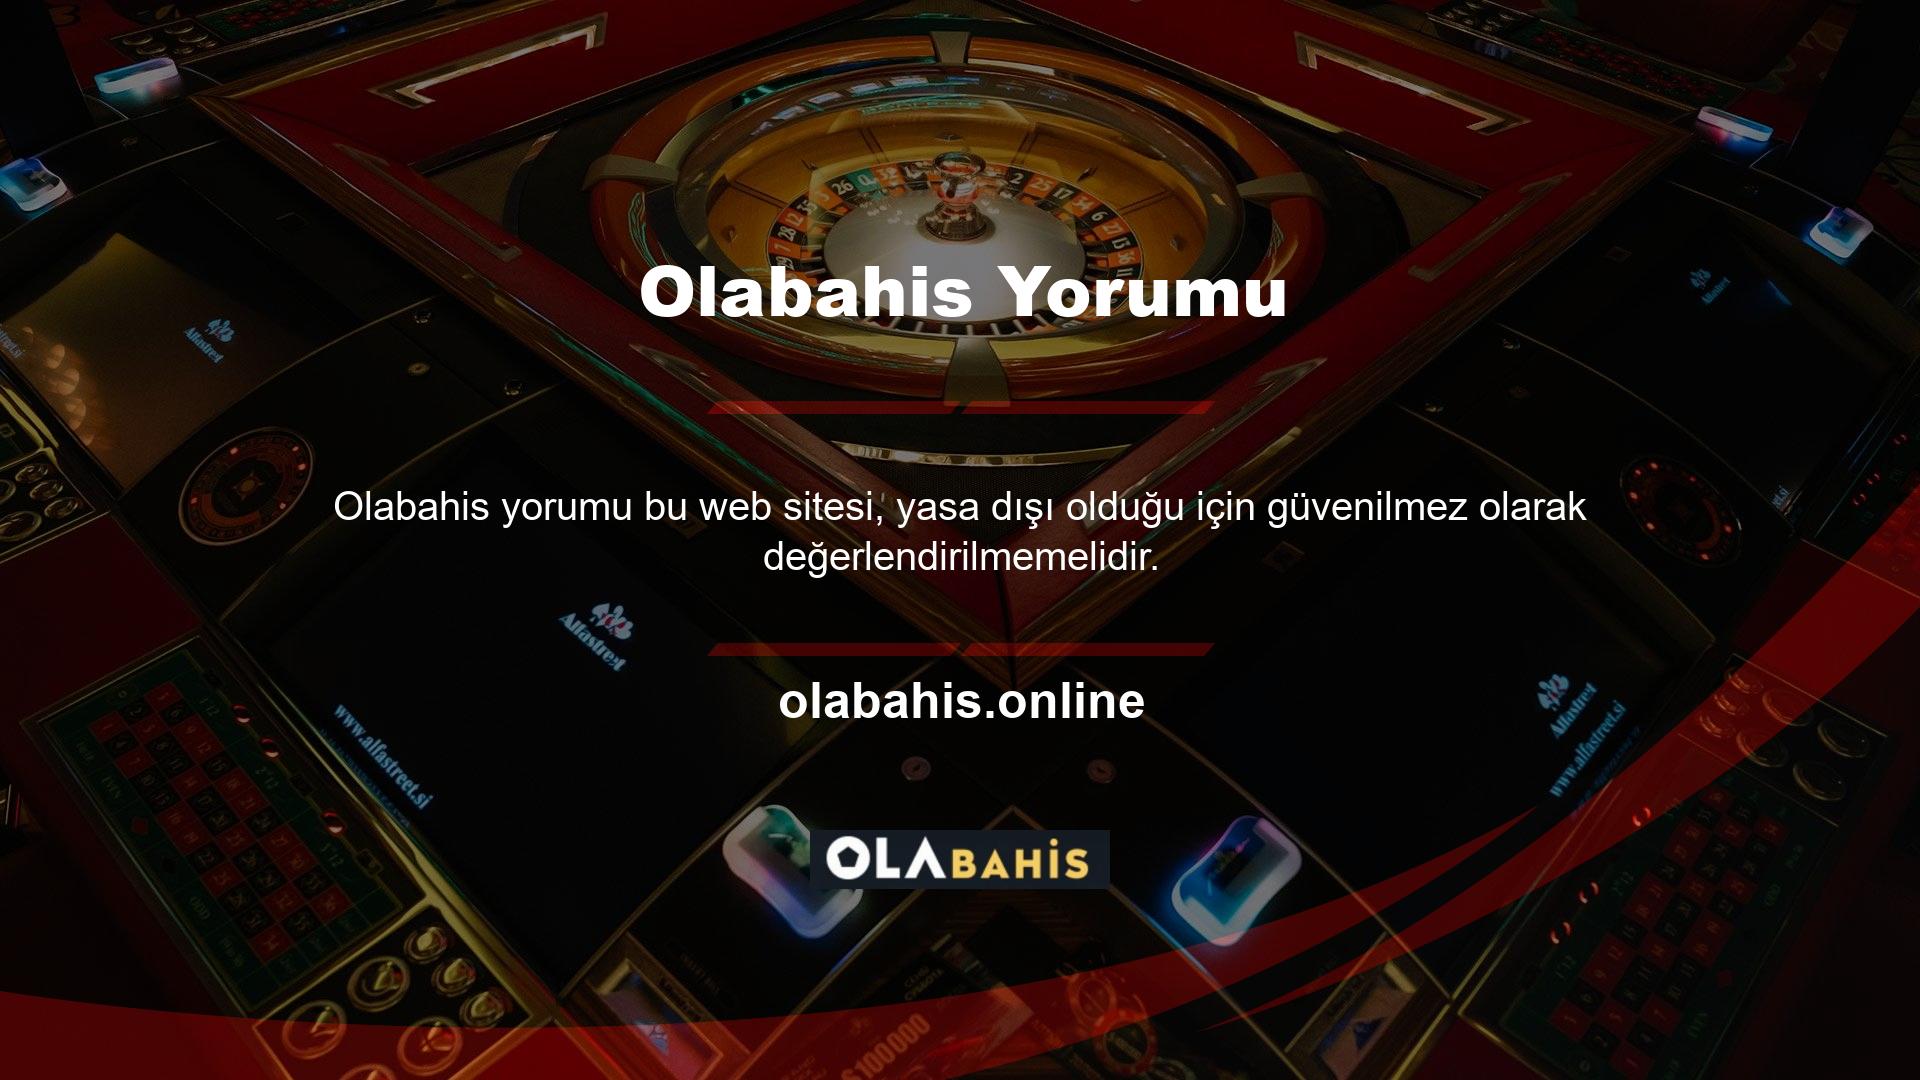 Türkiye'de yasal olarak para çekemeyeceğiniz bazı siteler var ama bunlar dünyadaki en popüler sitelerden bazıları